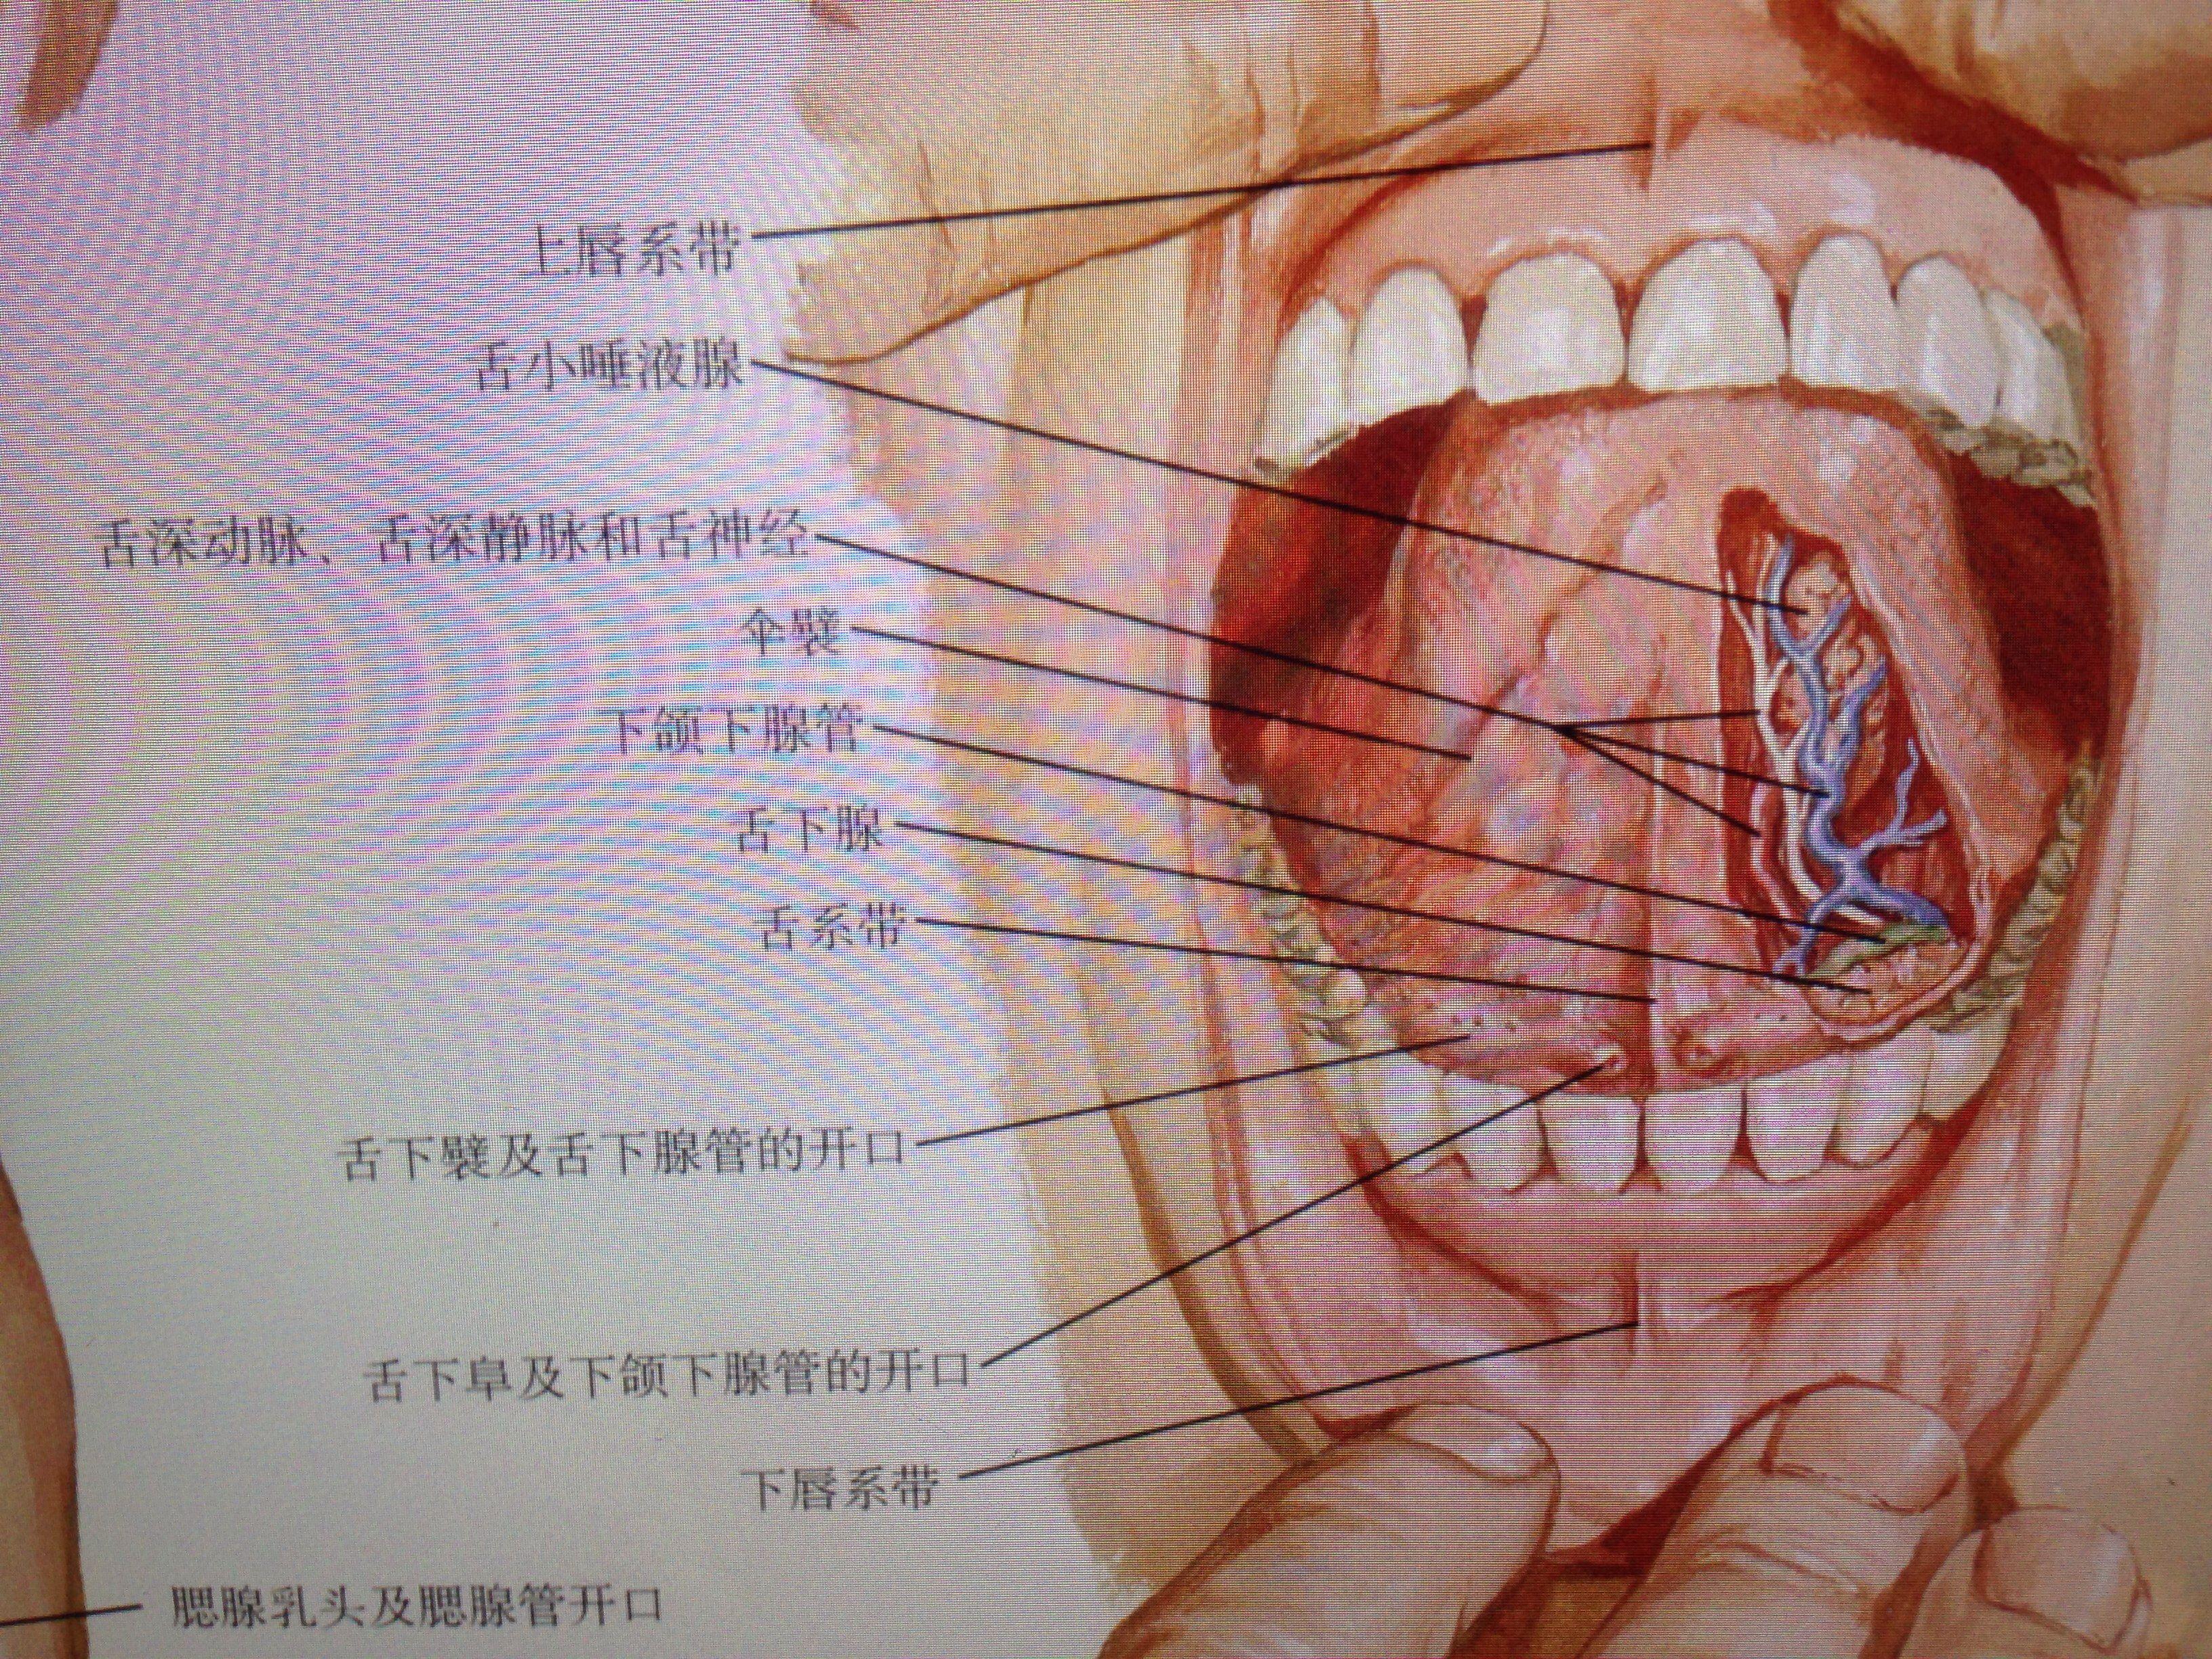 腮腺导管口位置图片